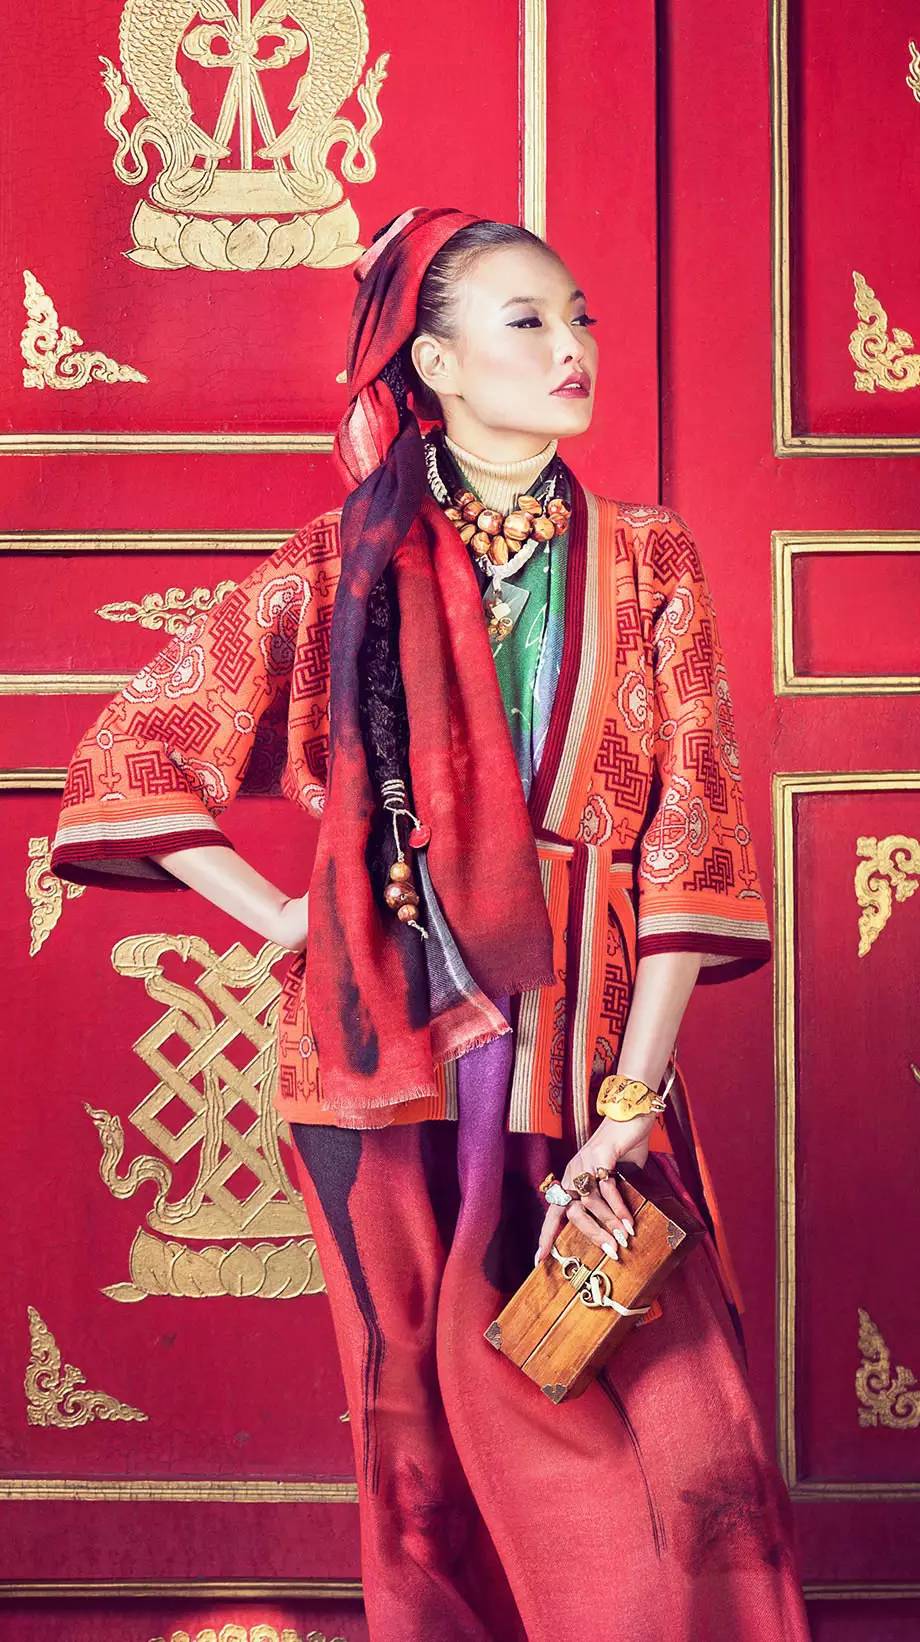 【蒙古服饰】蒙古国知名大牌GOBI 最新流行服饰展播 美呆了